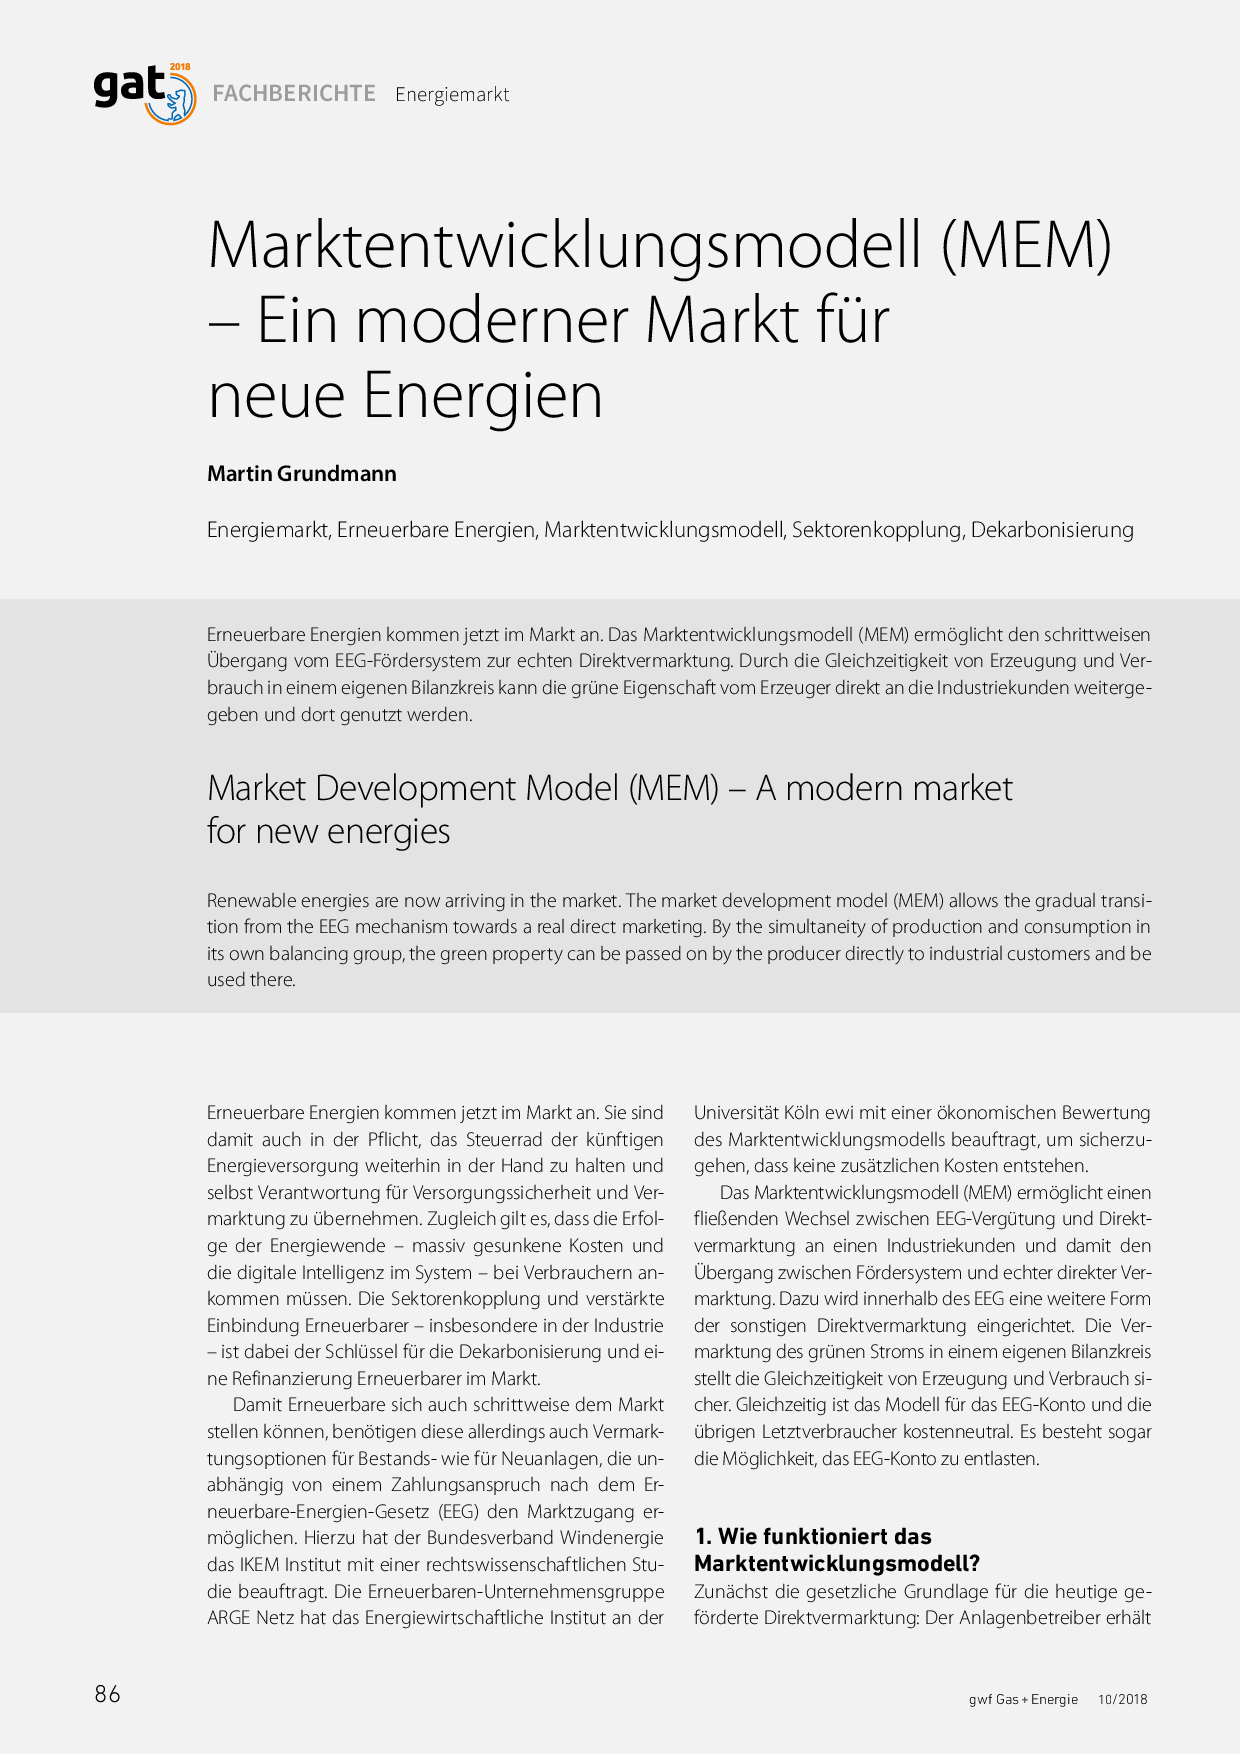 Marktentwicklungsmodell (MEM) – Ein moderner Markt für neue Energien